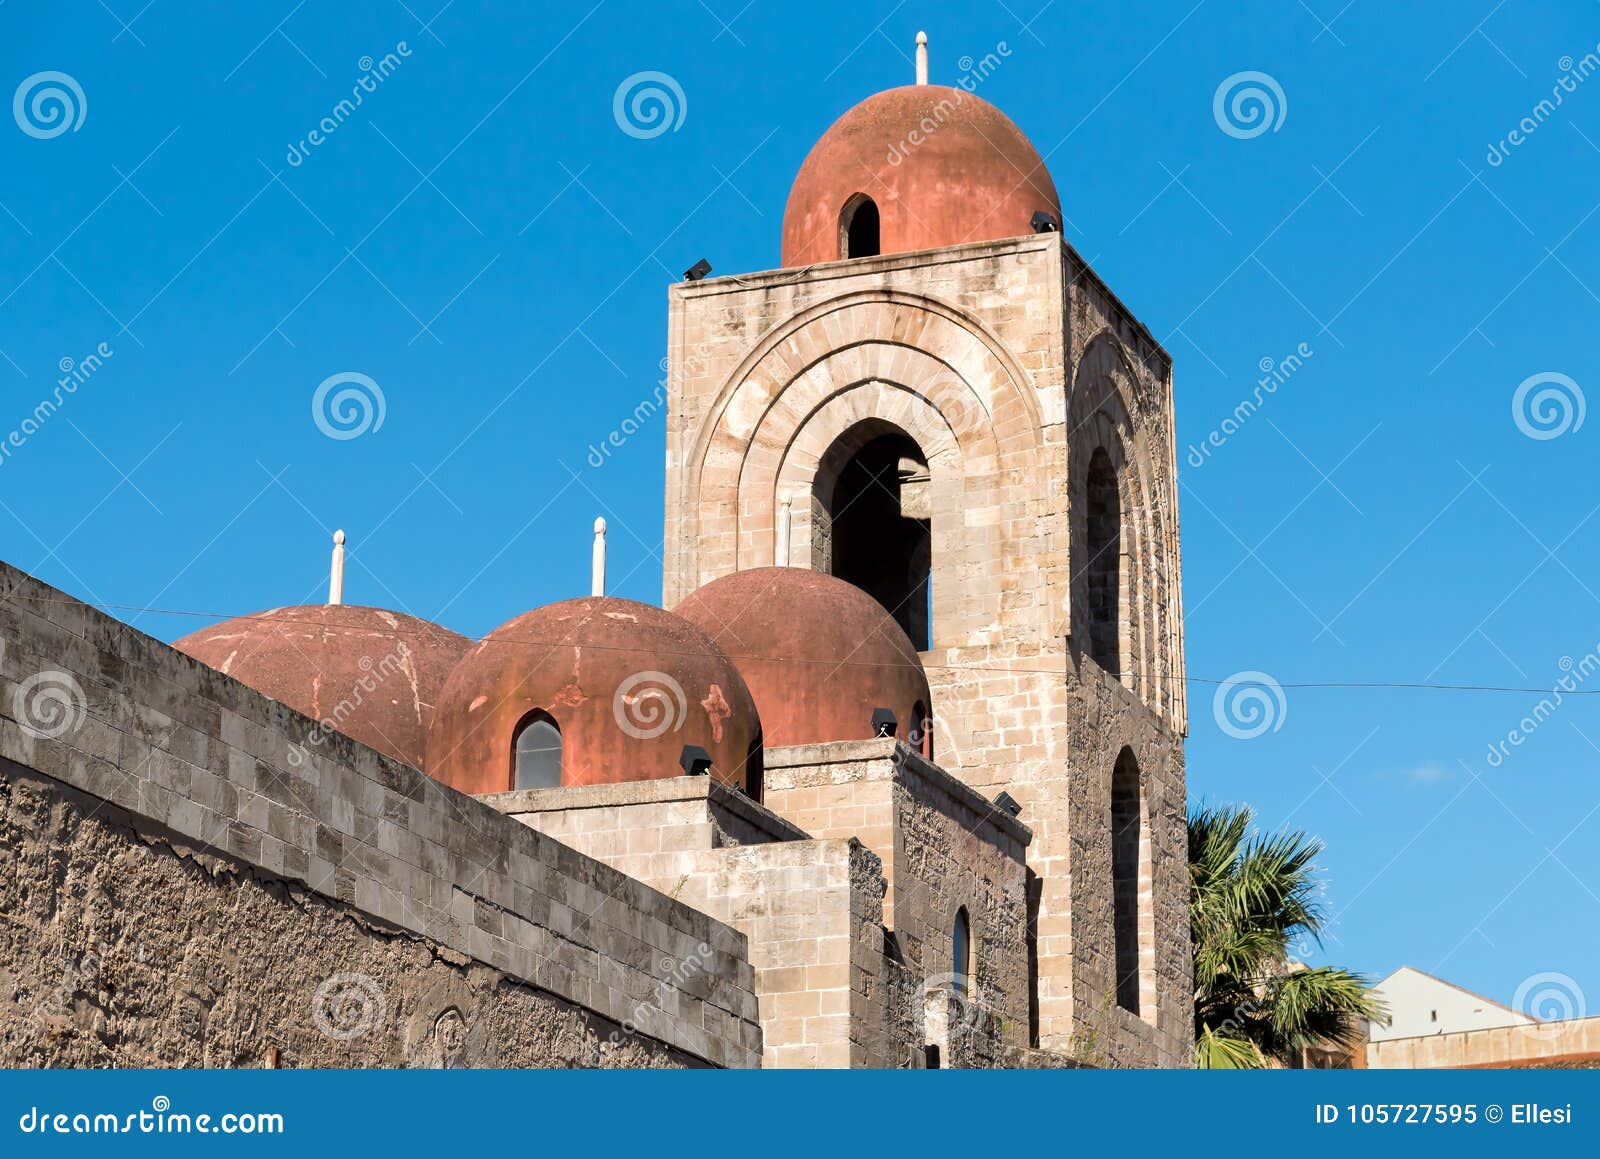 View of San Giovanni degli Eremiti, arab architecture in Palermo, Sicily, Italy